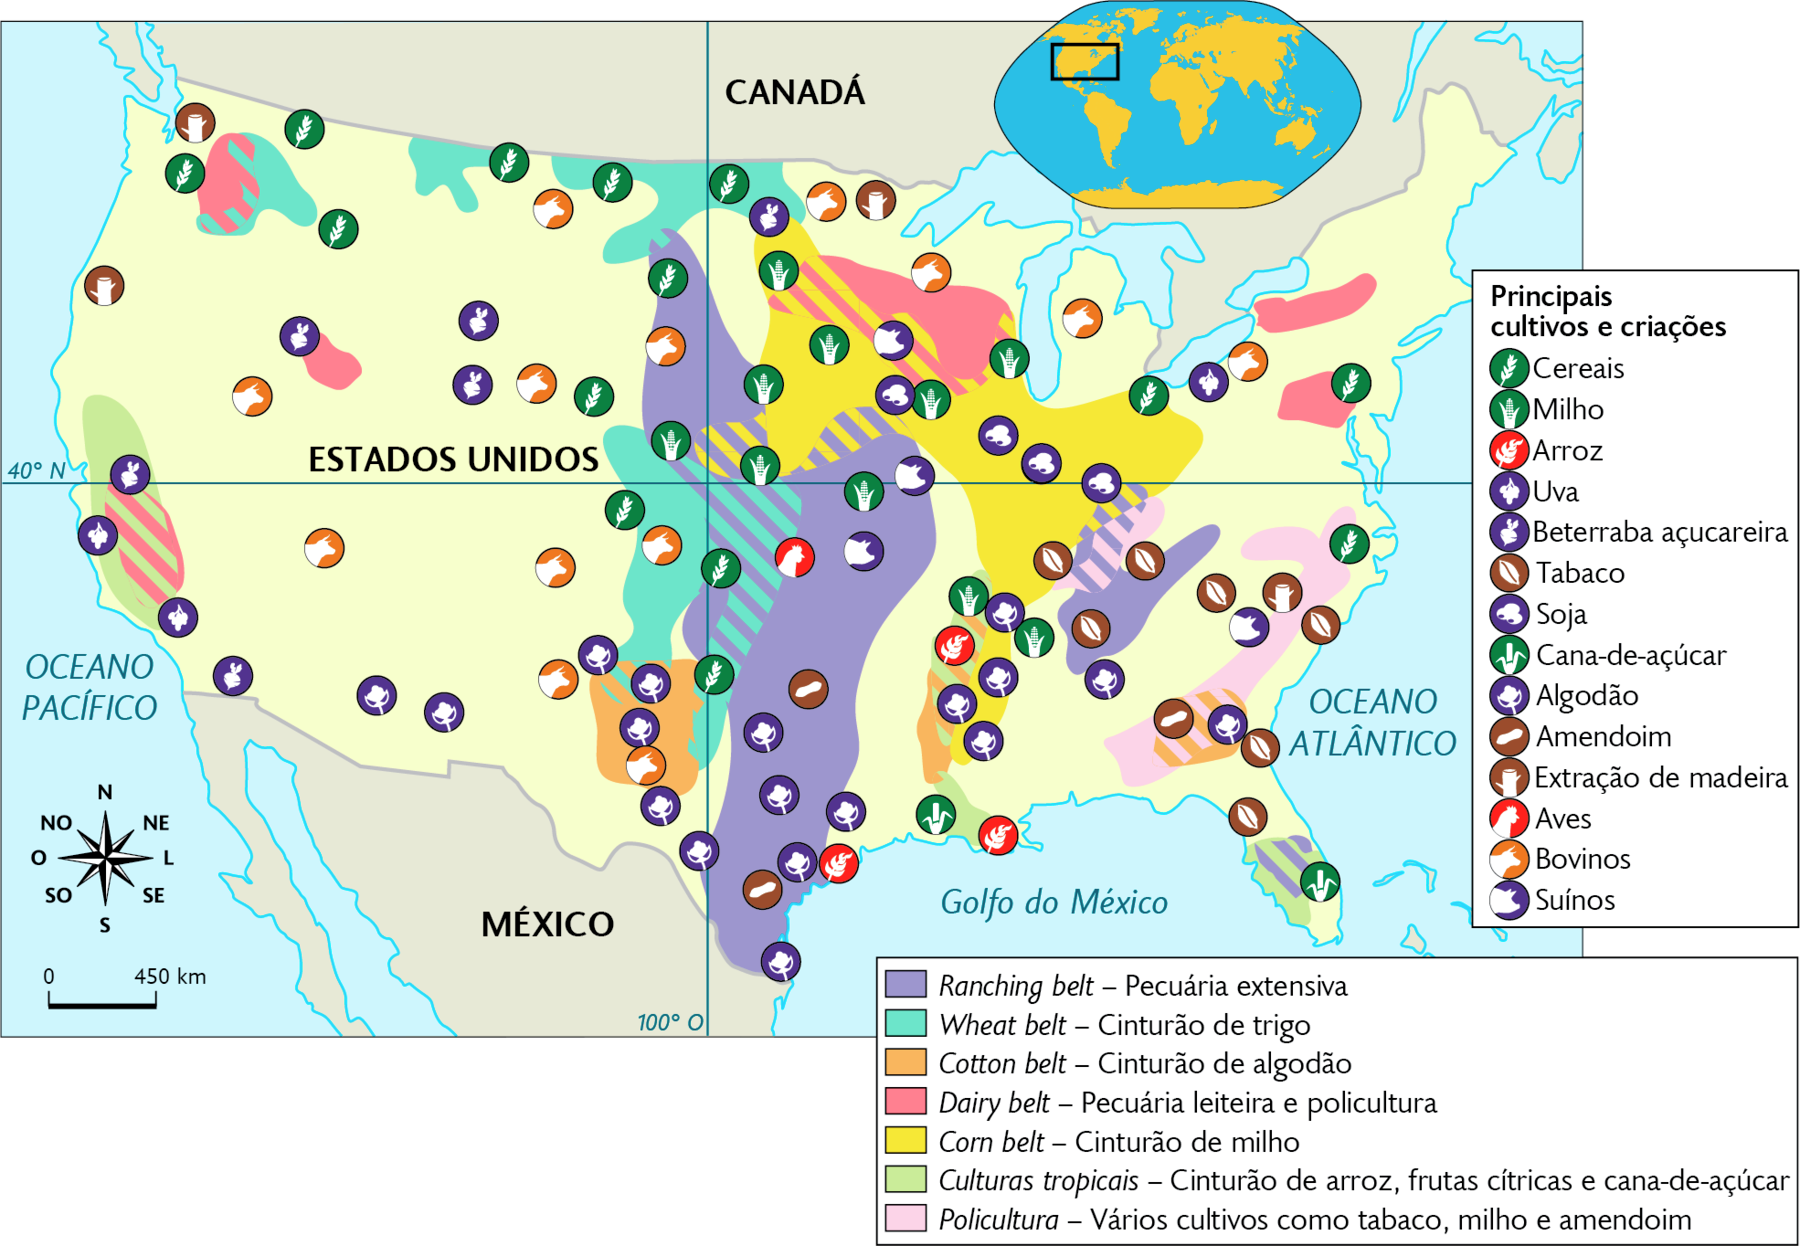 Mapa. Agropecuária dos Estados Unidos (2020). Principais cultivos e criações: Cereais, milho, arroz, uva, beterraba açucareira, tabaco, soja, cana-de-açúcar, algodão, amendoim, extração de madeira, aves, bovinos e suínos, encontrados dispersos por todo o território. Ranching belt – Pecuária extensiva: norte, centro, sul e área no sudeste. Wheat belt – Cinturão de trigo: áreas no norte e no centro. Cotton belt – Cinturão de algodão: áreas no sul e no sudeste. Dairy belt – Pecuária leiteira e policultura: áreas no noroeste, norte e nordeste. Corn belt – Cinturão de milho: área no norte na porção leste e área central. Culturas tropicais – Cinturão de arroz, frutas cítricas e cana-de-açúcar: áreas sudoeste, sul e sudeste. Policultura – Vários cultivos como tabaco, milho e amendoim: áreas no sudeste. Na parte superior, mapa de localização, planisfério destacando a região descrita. No canto inferior esquerdo, a rosa dos ventos e a escala: 450 quilômetros por centímetro.